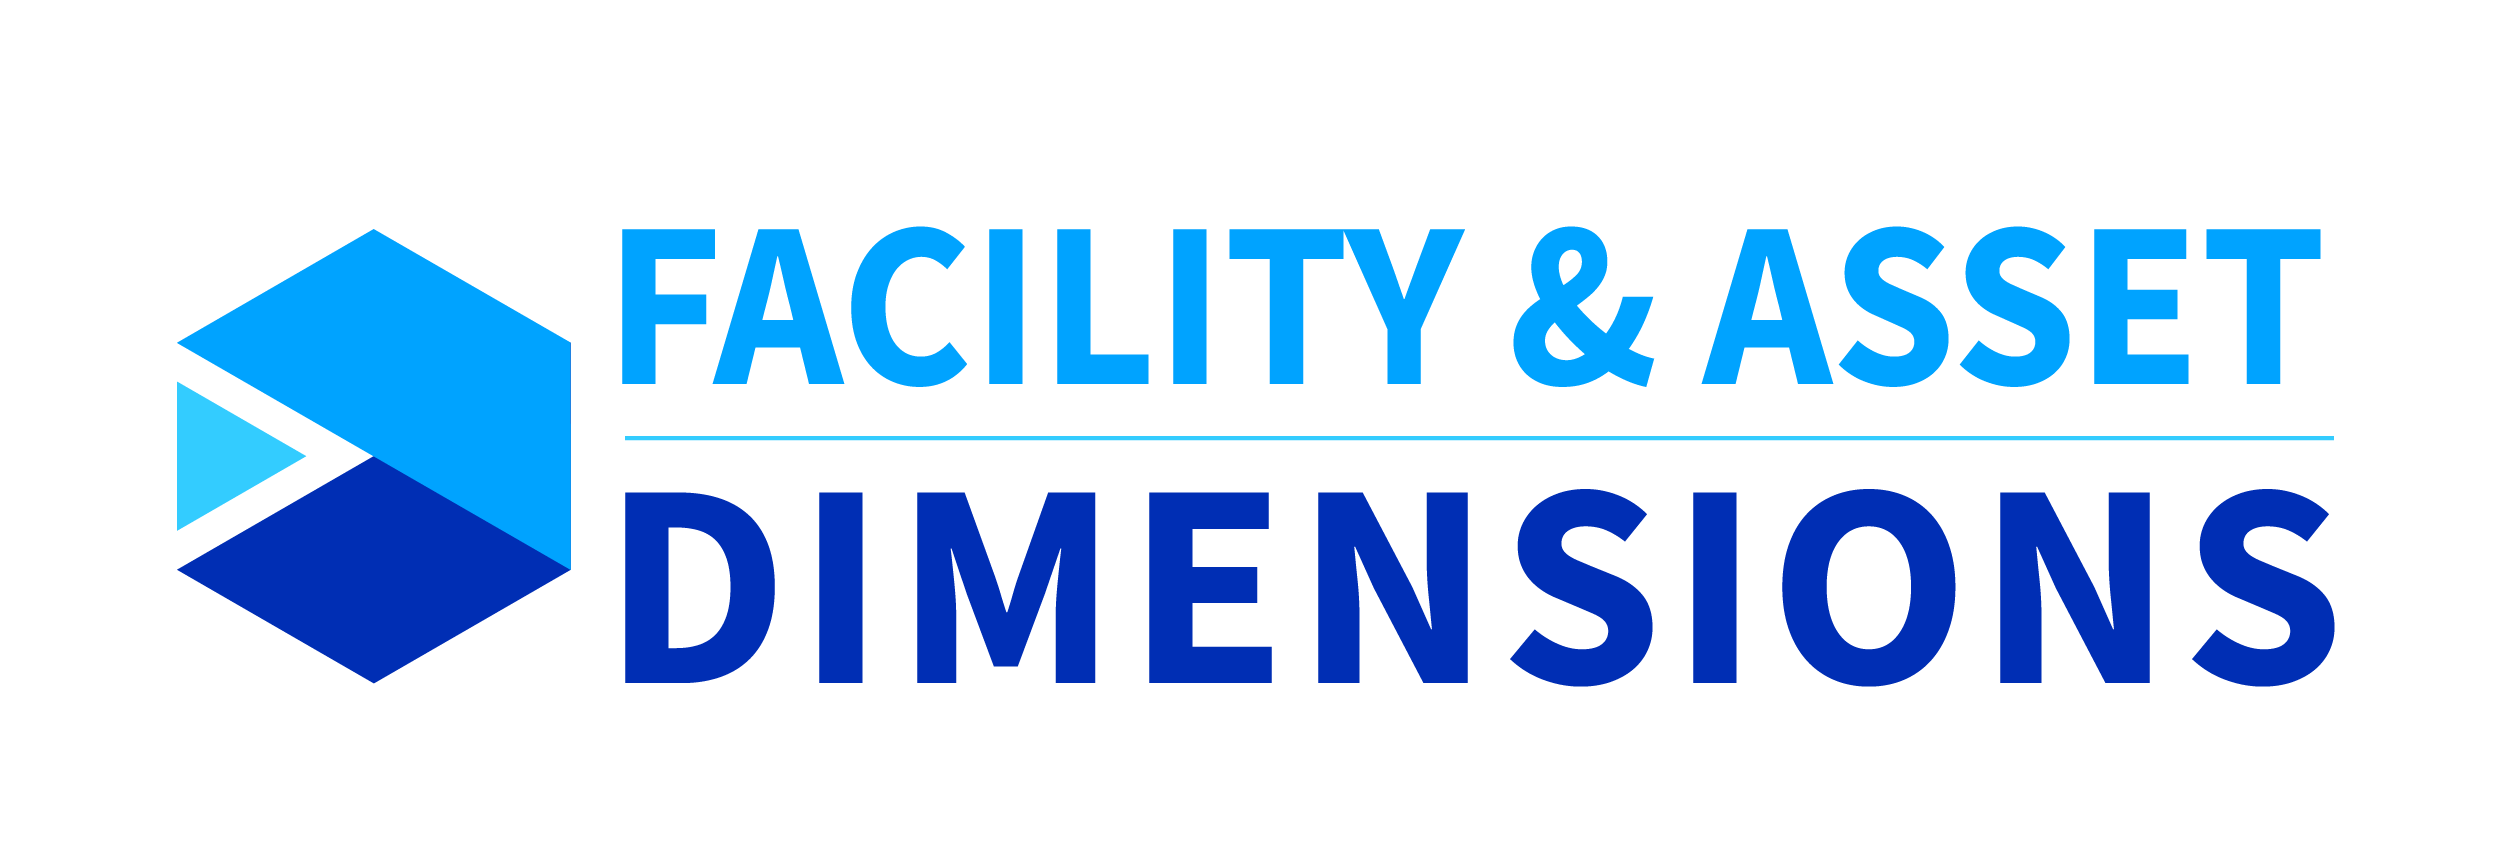 Acceltech Pte Ltd - Dimensions des installations et des actifs